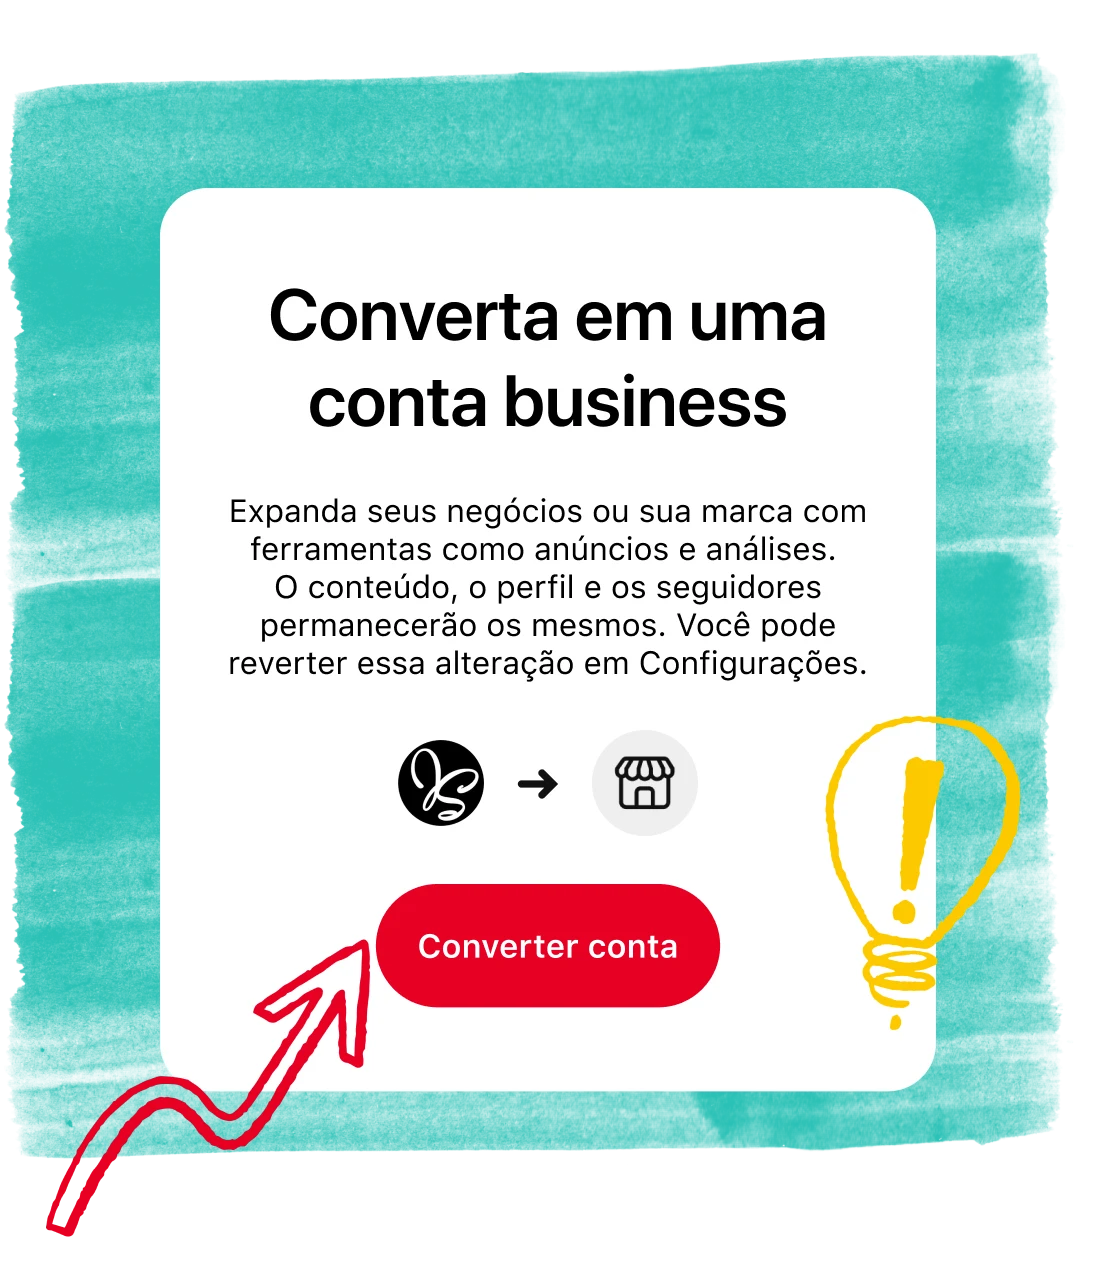 Tela do aplicativo do Pinterest mostra como converter para uma conta business